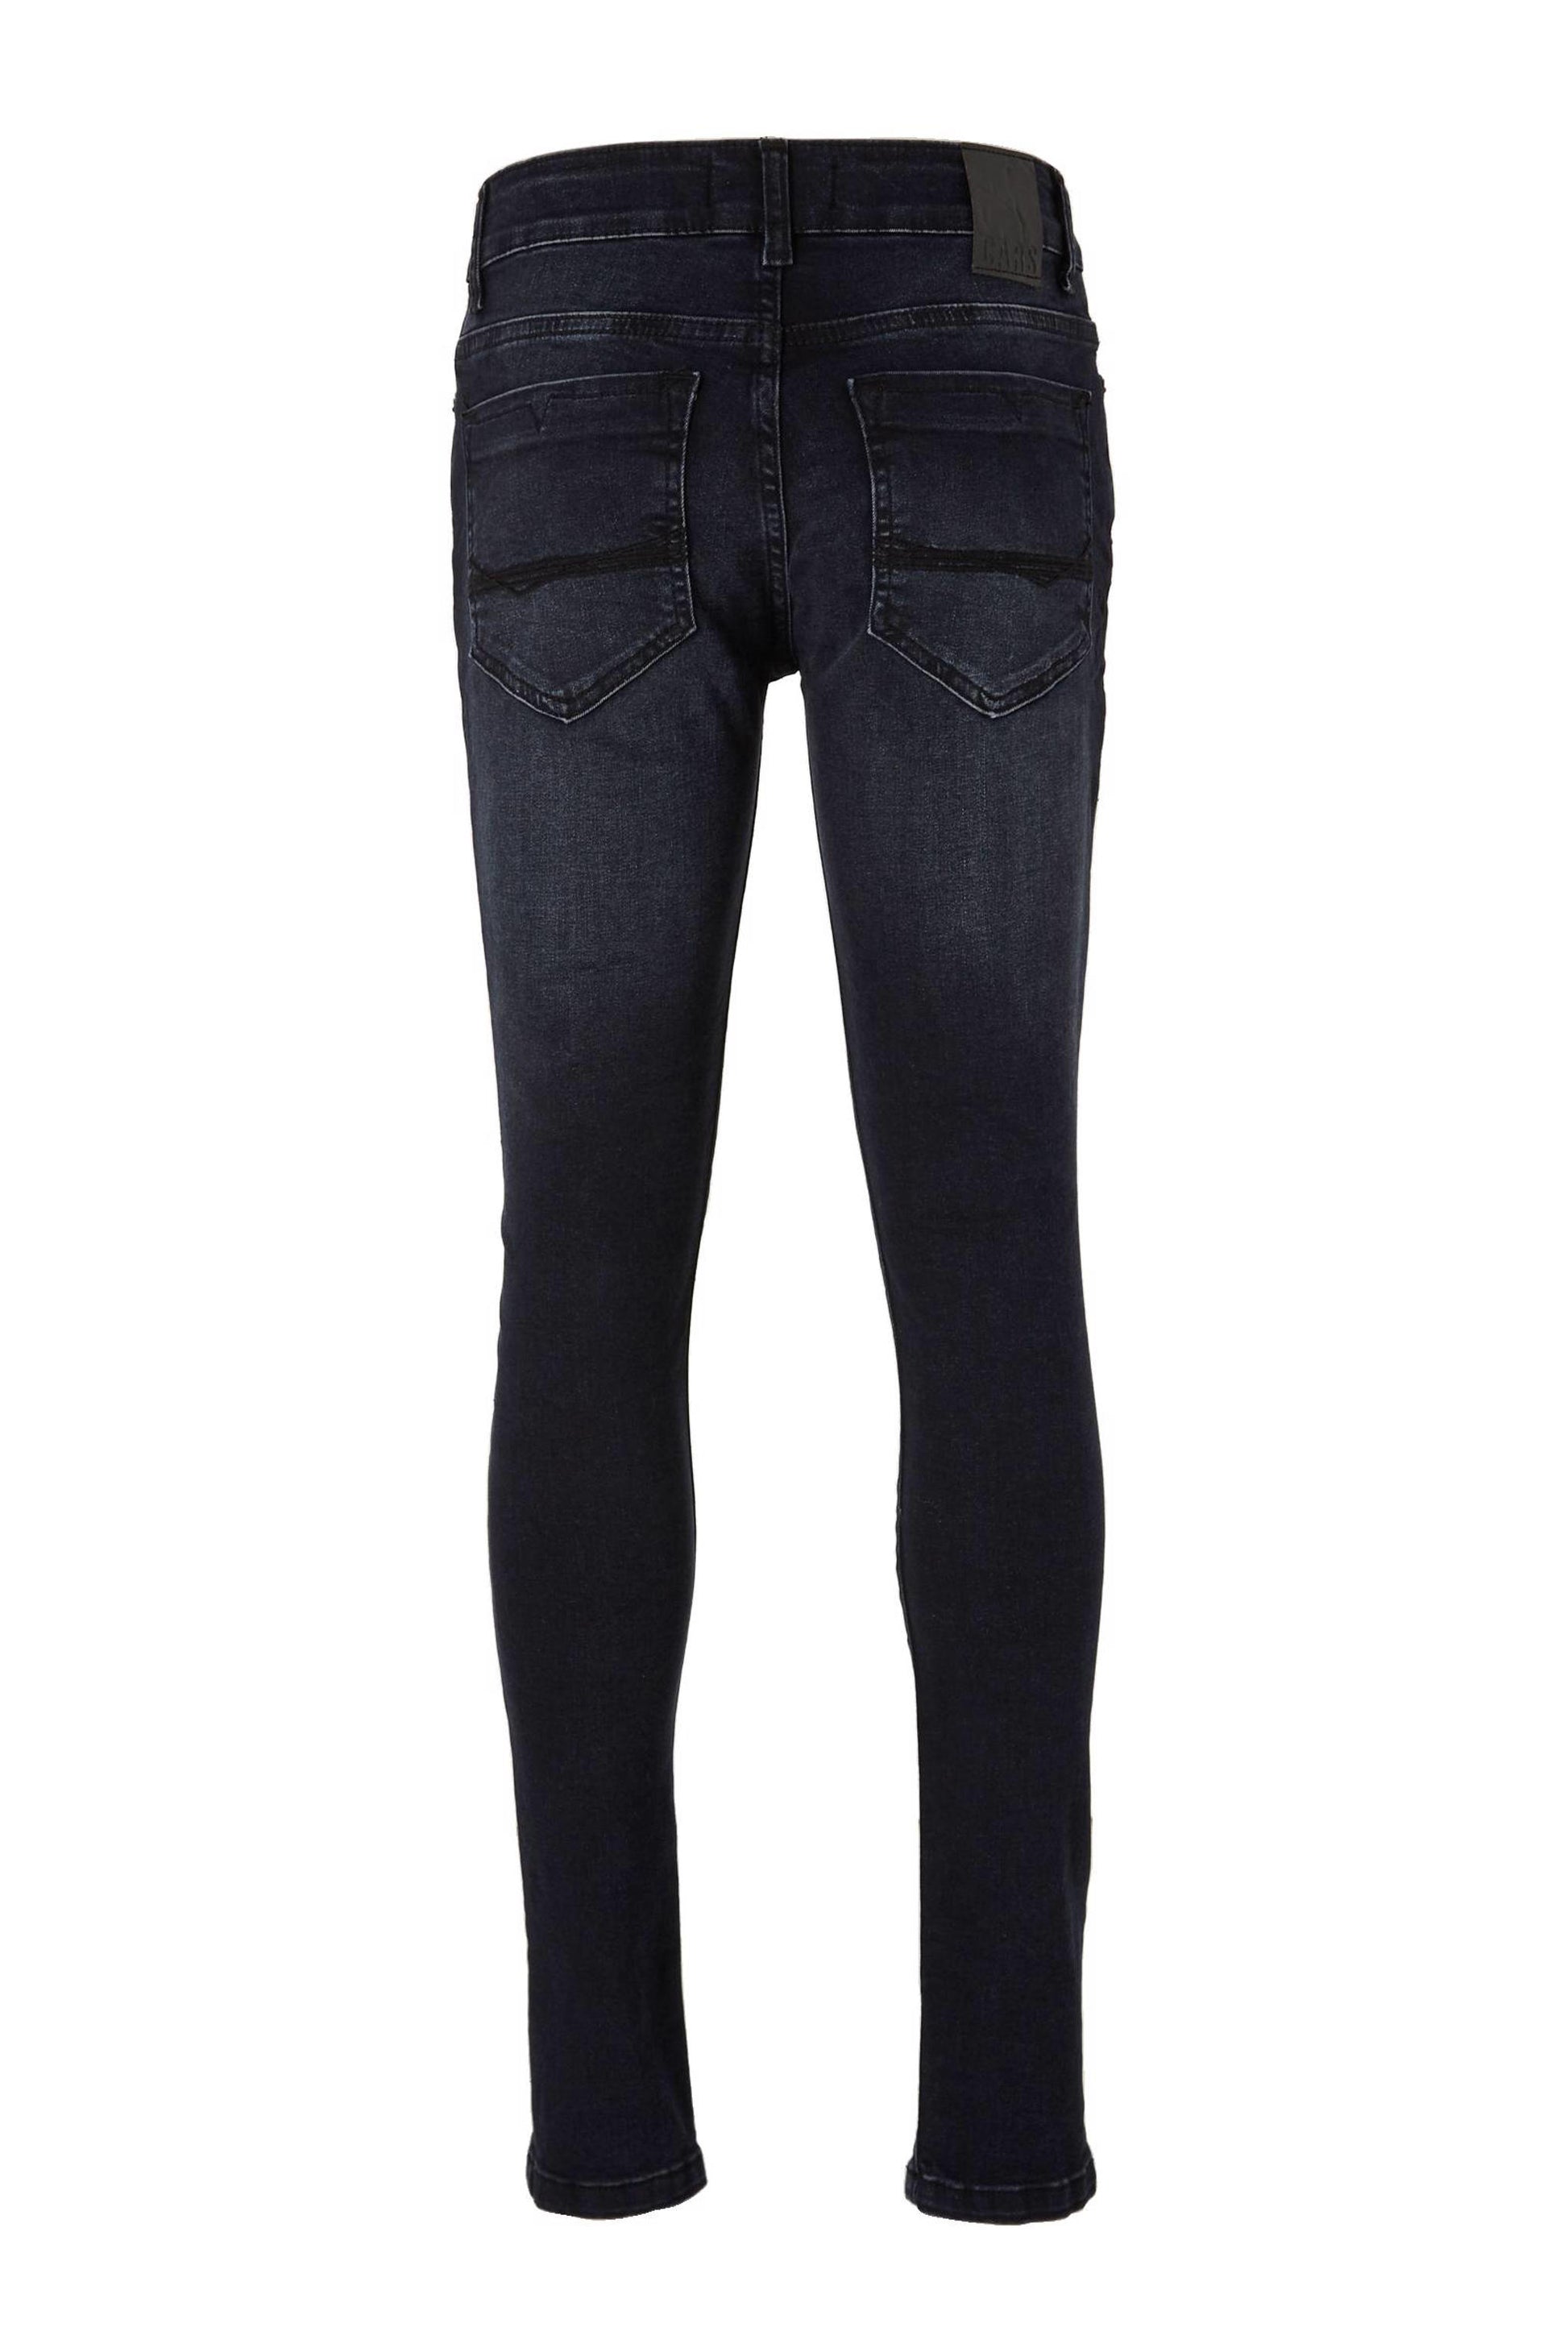 Moet Berg kleding op Opvoeding Cars Jeans Dust Skinny fit Blue Black 7552893 – Baggy Choice